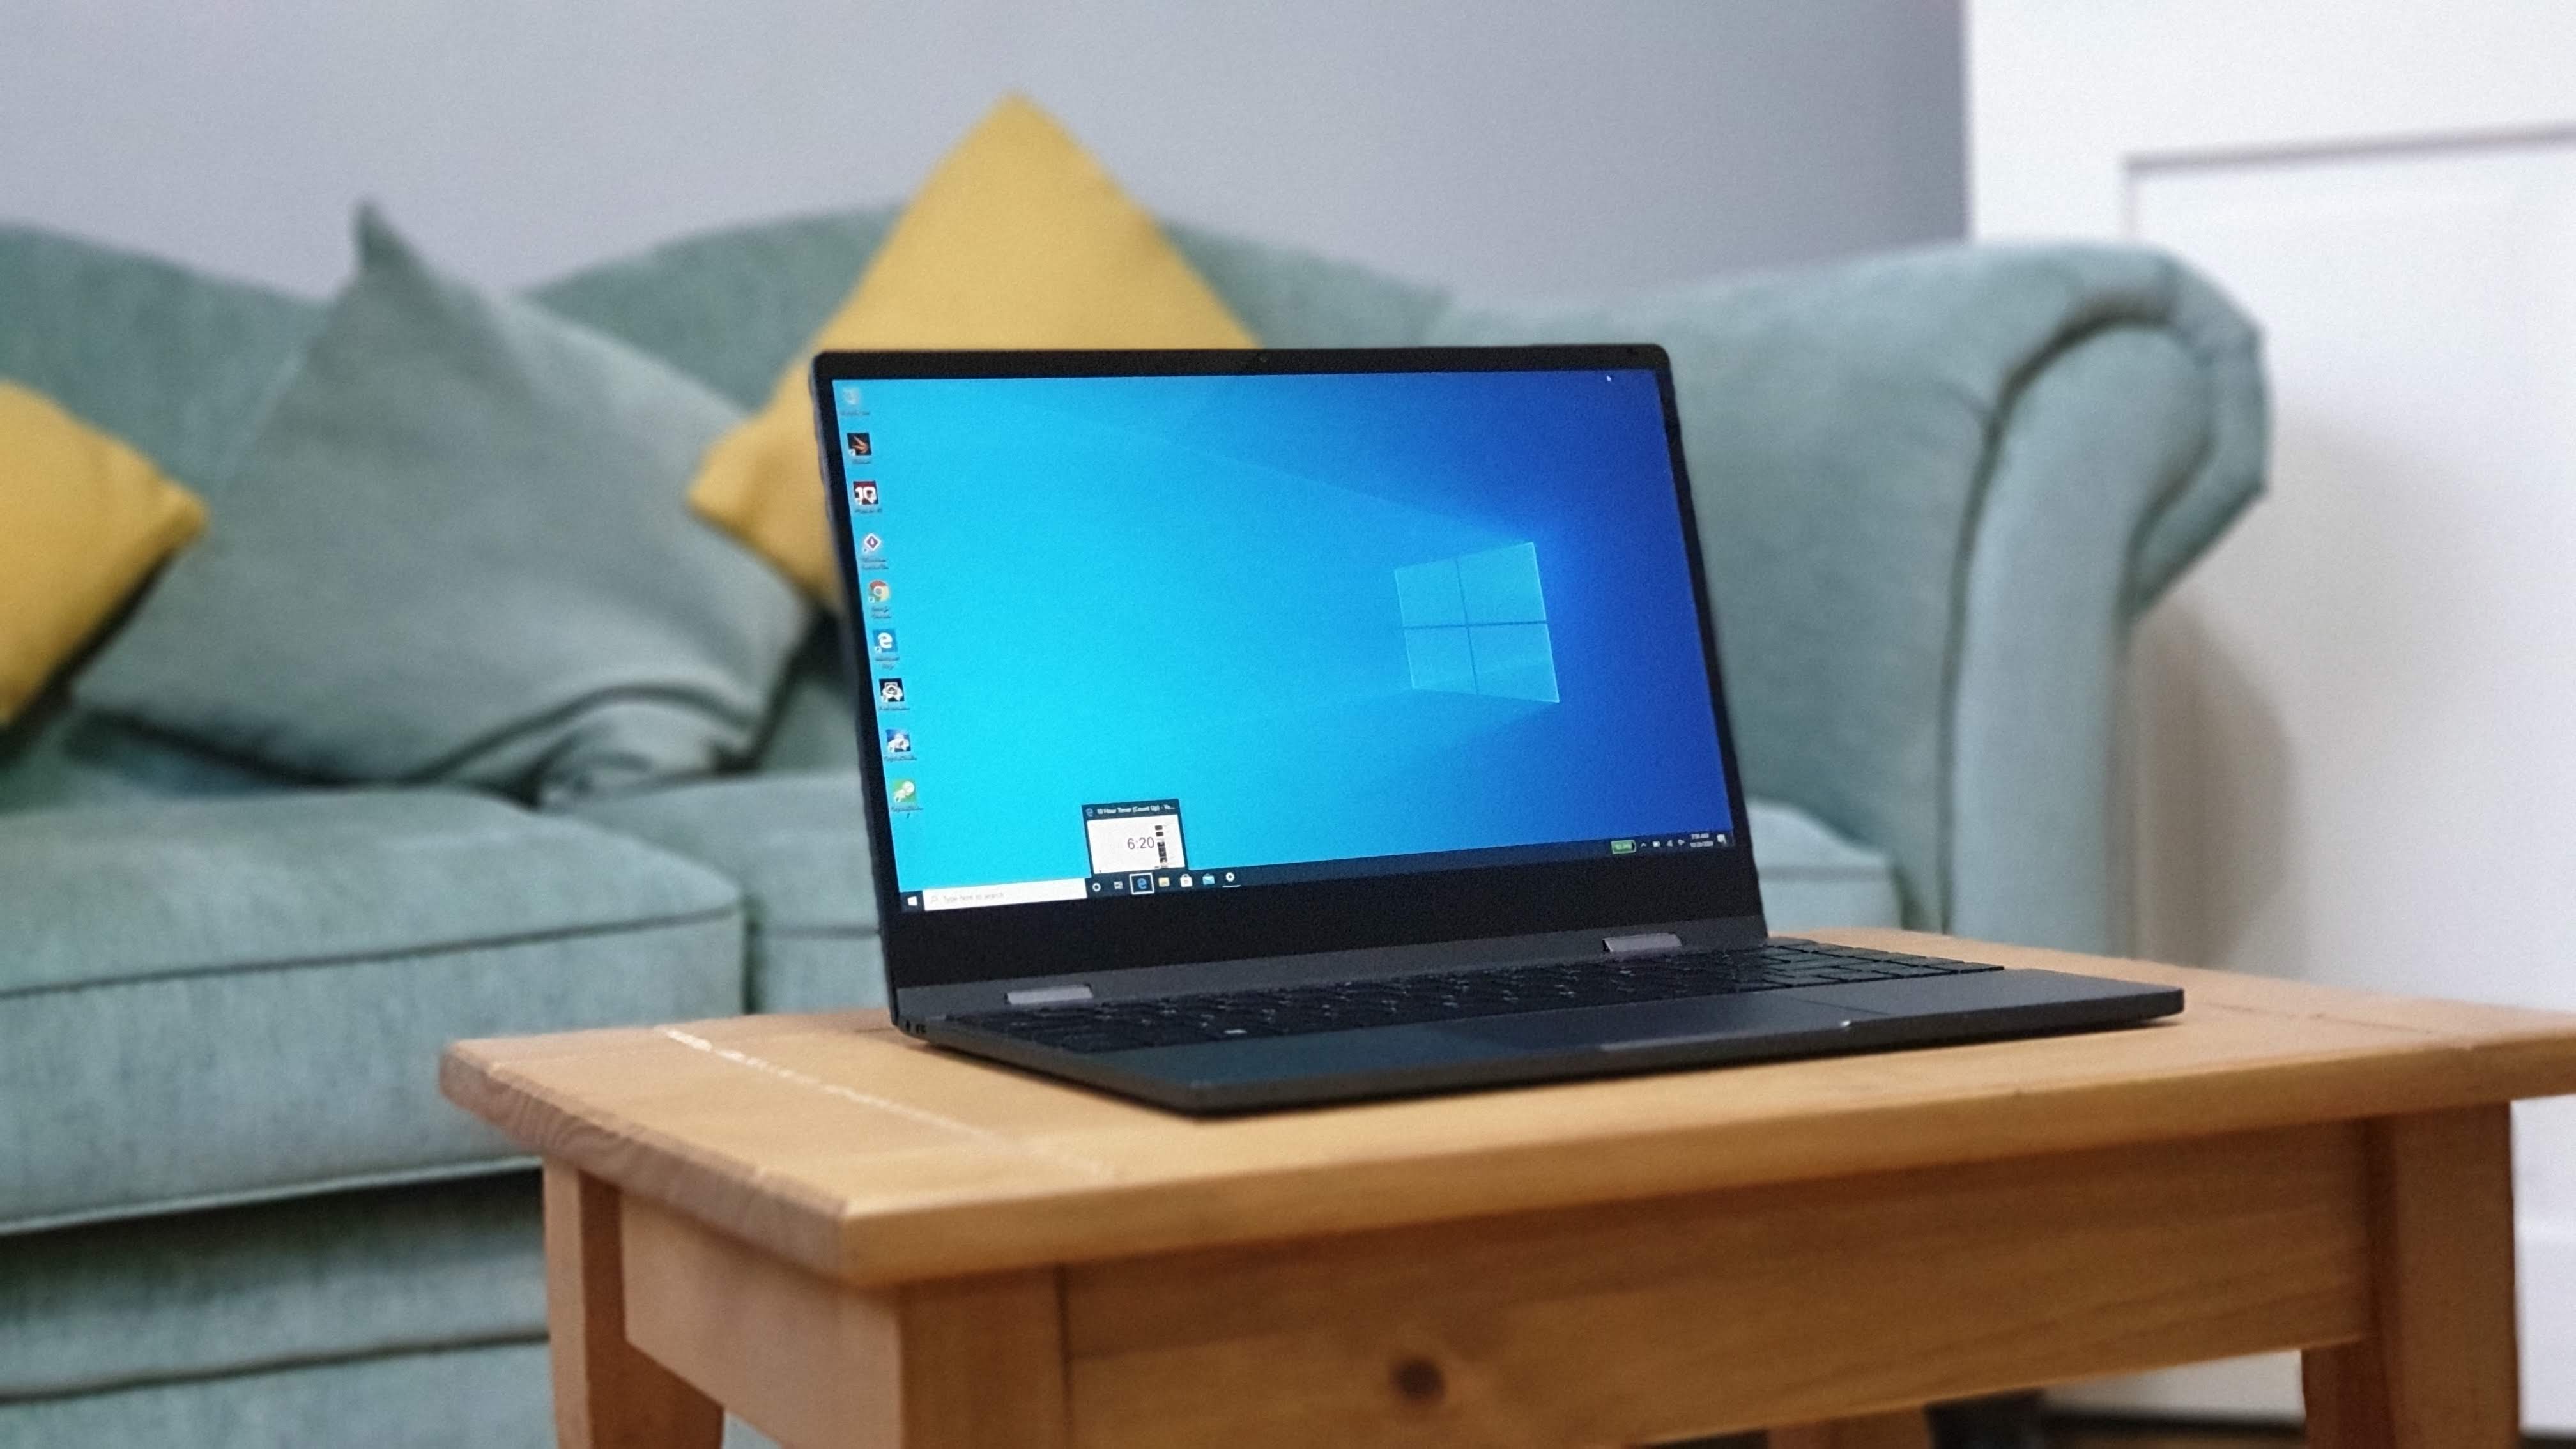 Bmax Y13 Pro Windows 10 Pro 2 In 1 Convertible Laptop Review Techradar